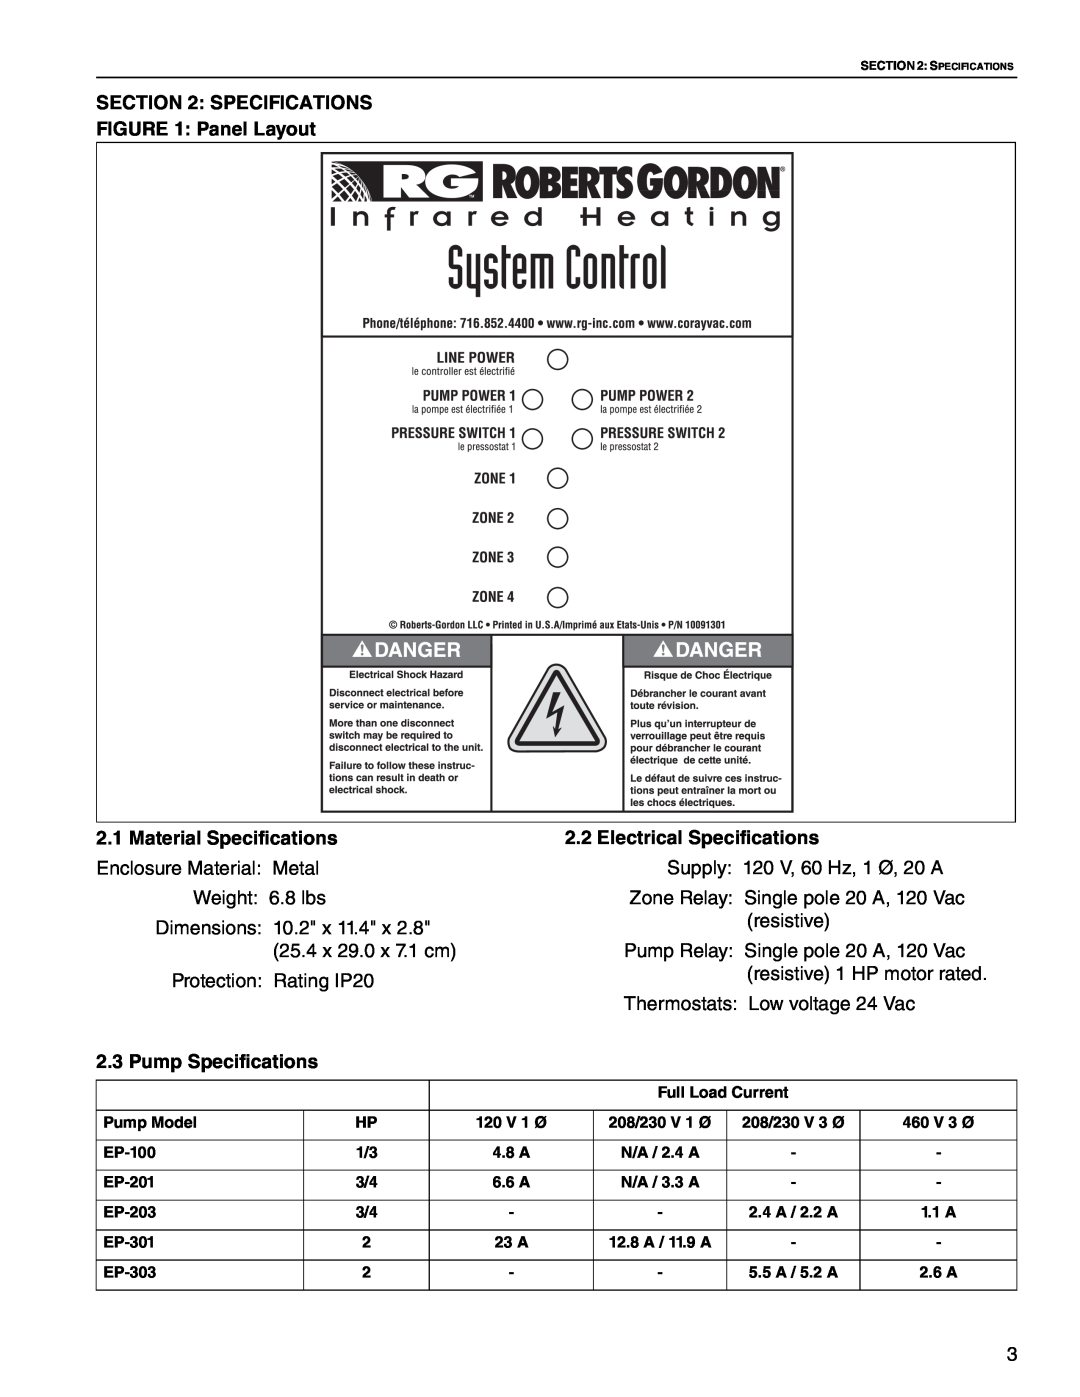 Roberts Gorden HP 460 V 3, HP 208 V 1, HP 208 V 3 SPECIFICATIONS Panel Layout, Material Specifications, Pump Specifications 